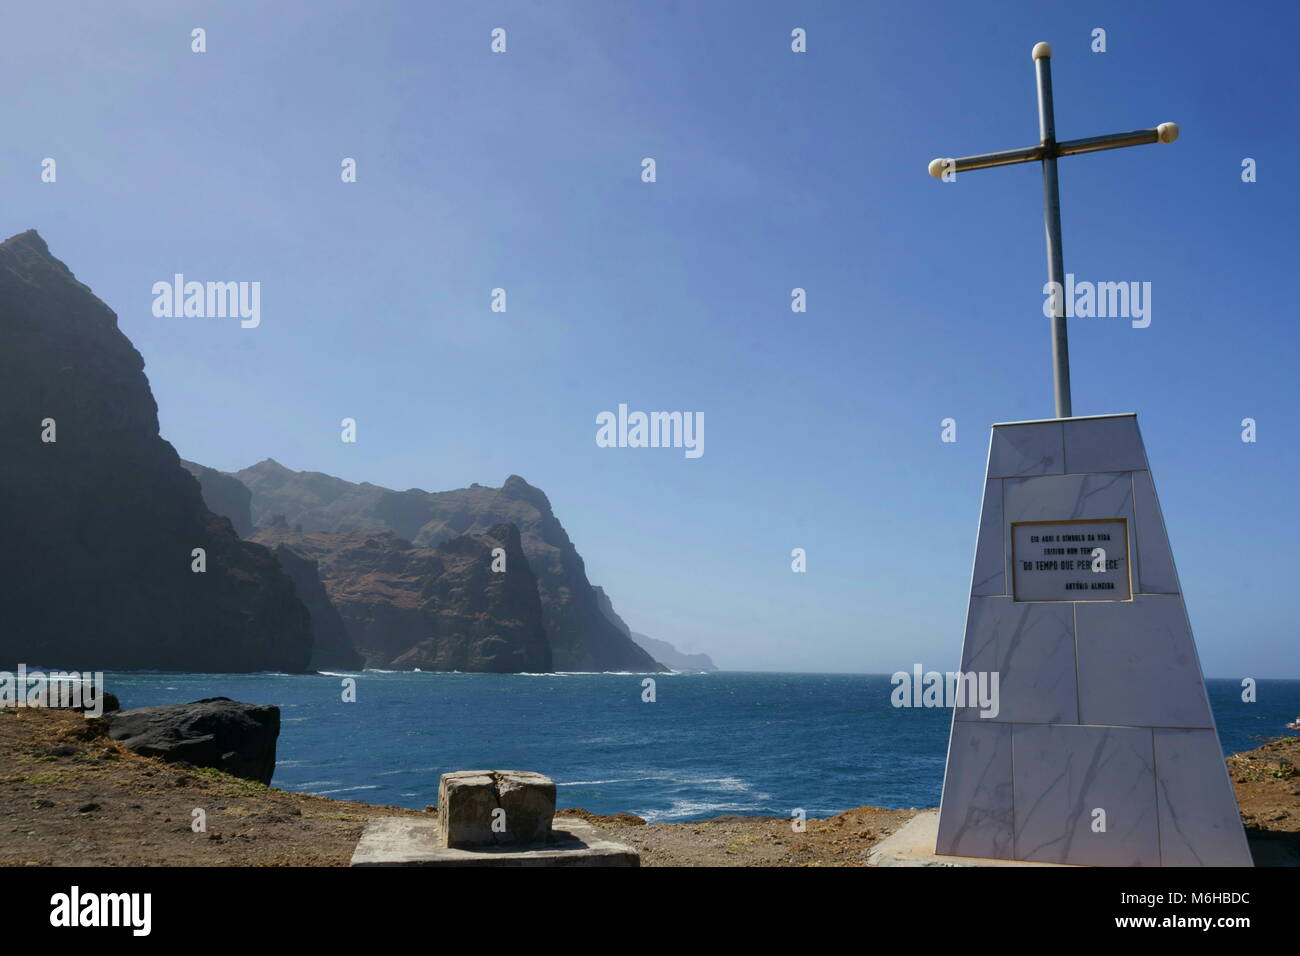 Monument 'do tempo que permanece' Antonio almeida, Ponta do Sol, Santo Antao, Cape Verde Stock Photo